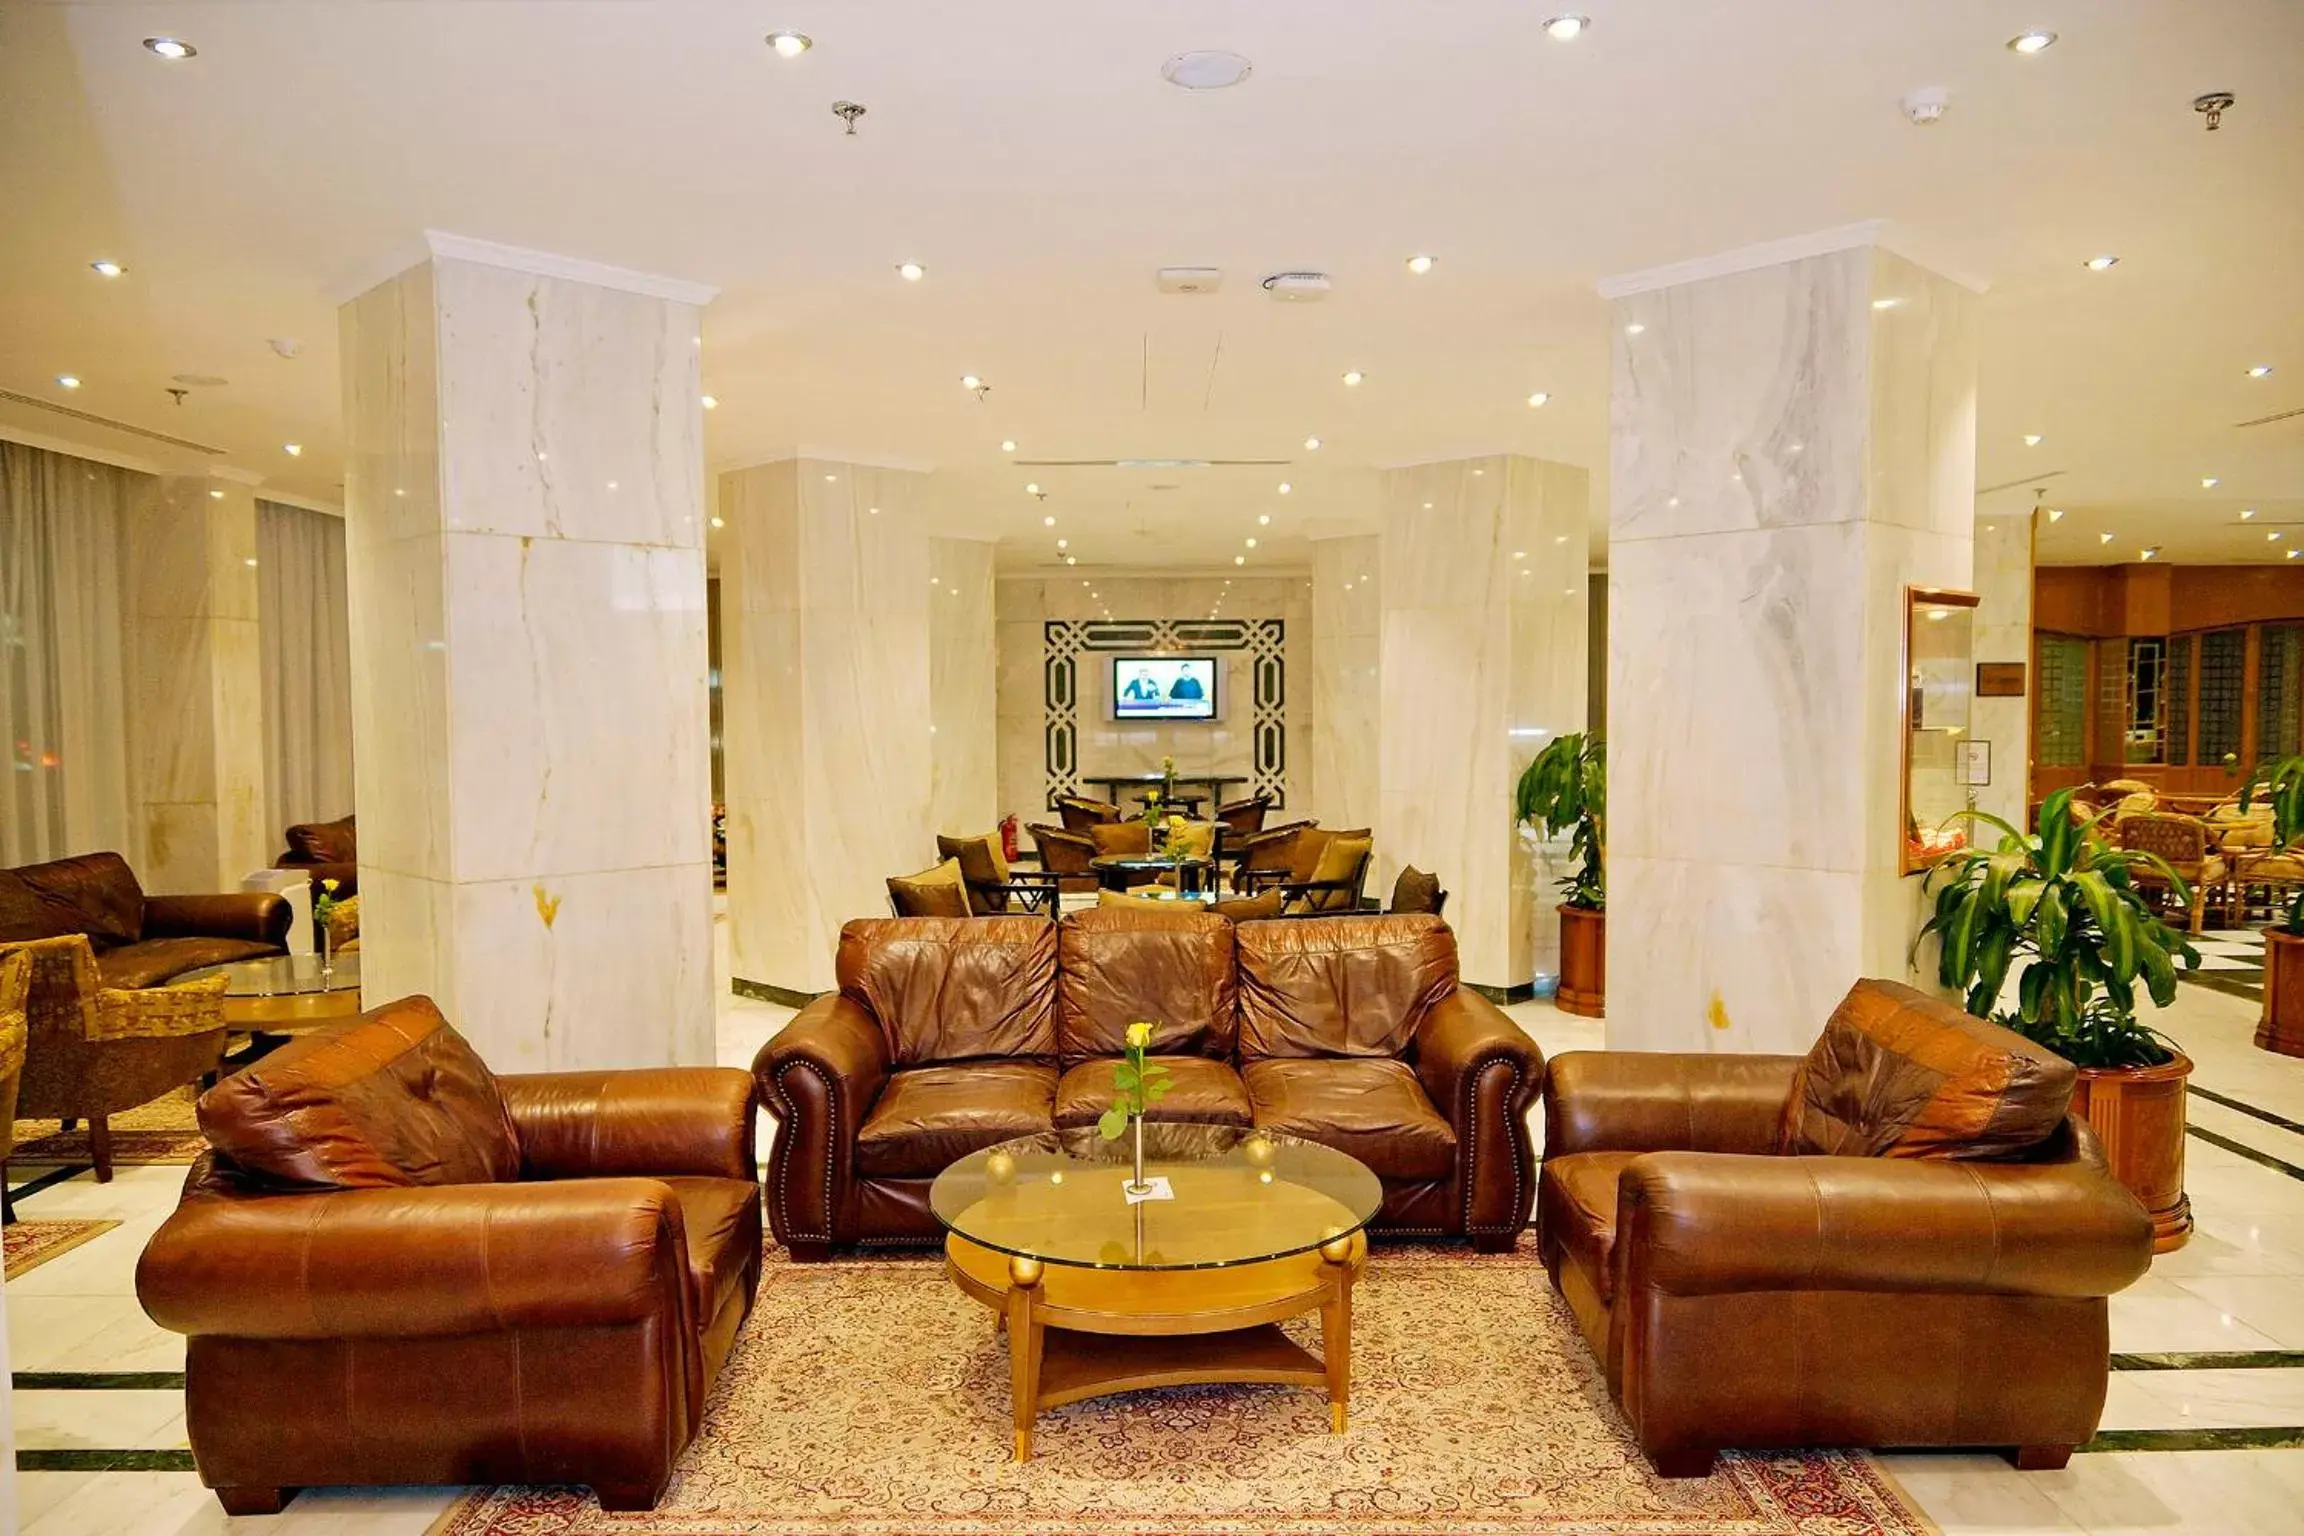 Lobby or reception, Lobby/Reception in Swiss Al Hamra Hotel